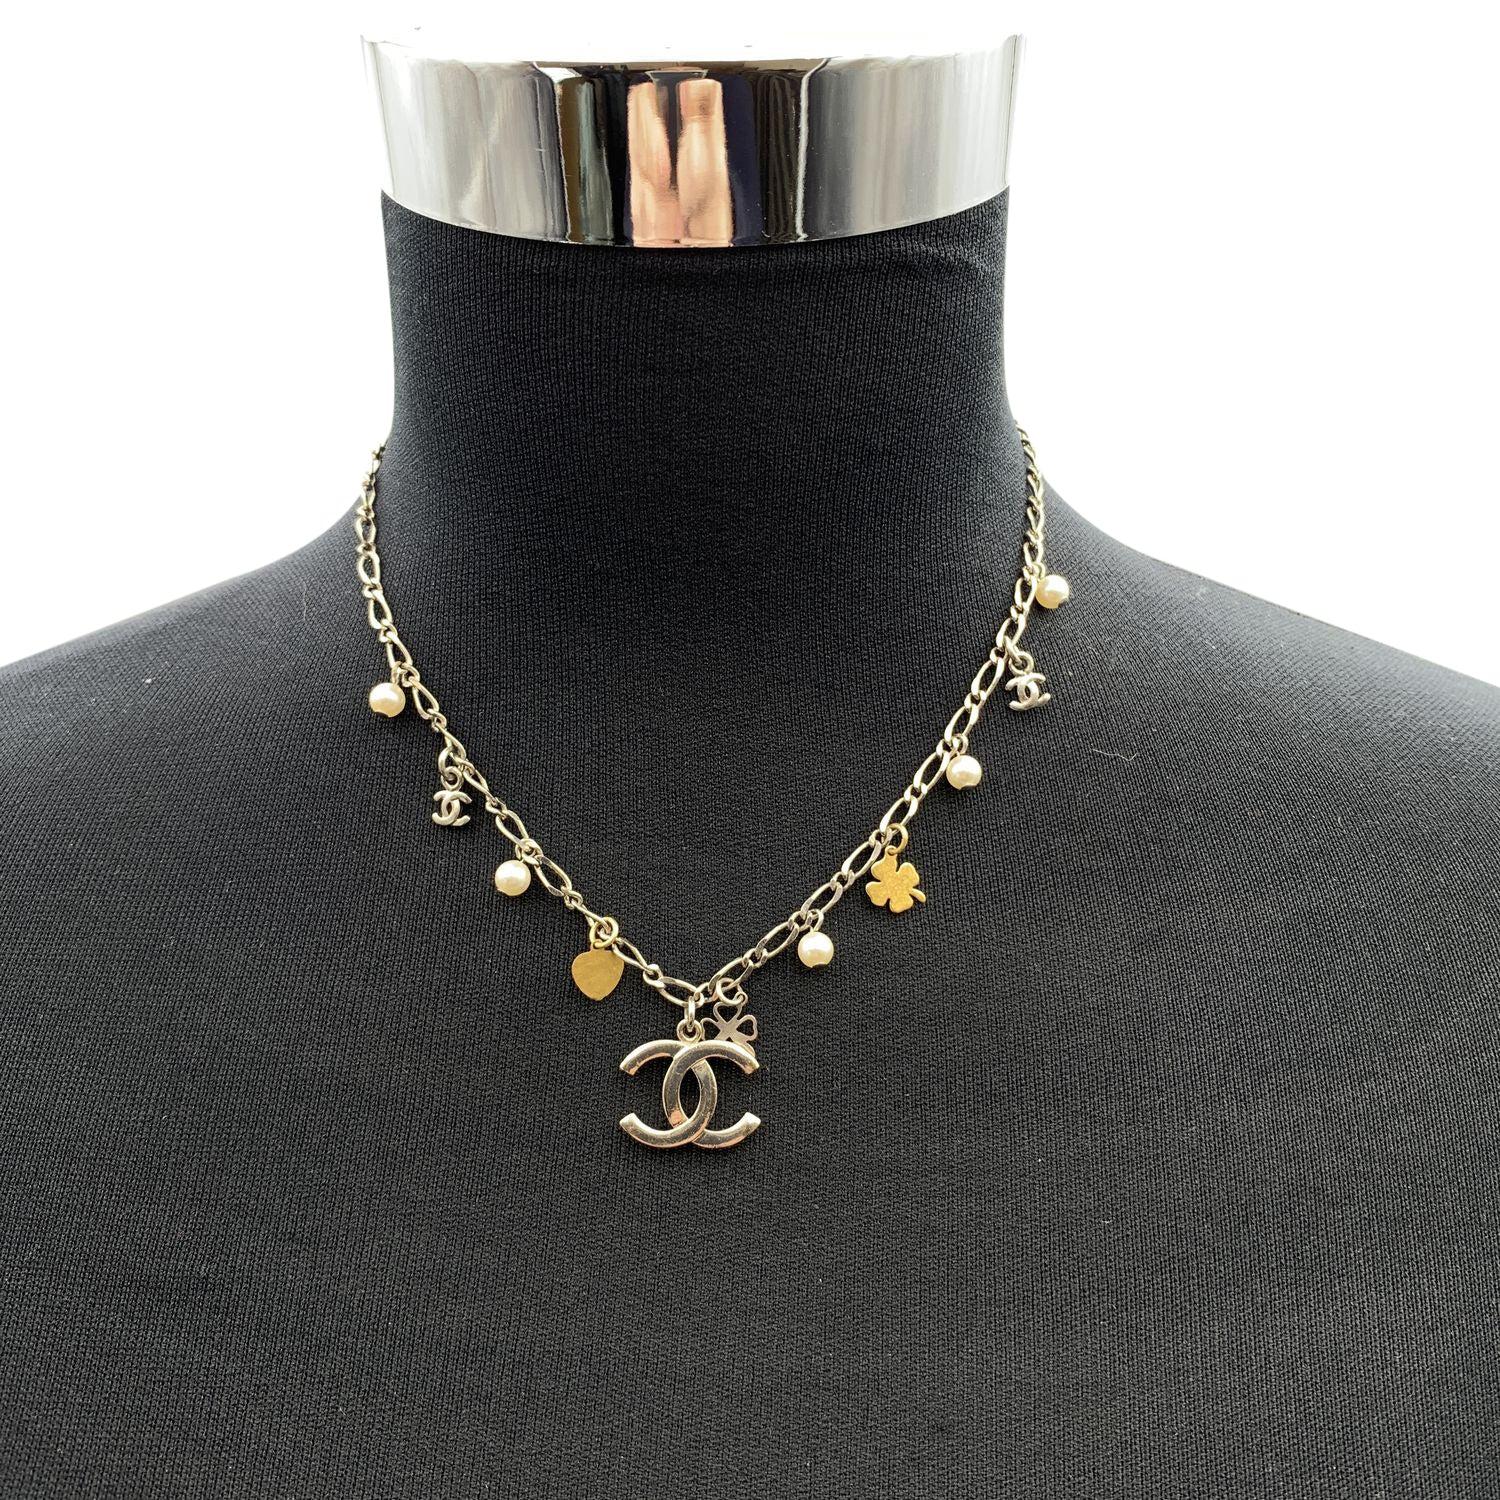 Hübsche Chanel-Halskette mit kleinen Charms. Es zeigt kleine goldene Kleeblätter, kleine Perlen und CC-Logos. Hummerverschluss. Gesamtlänge der Kette: 16,5 Zoll - 41,9 cm. Ovale Marke 'CHANEL 06 CC V - Made in France' am Ende der Kette. Zustand A -